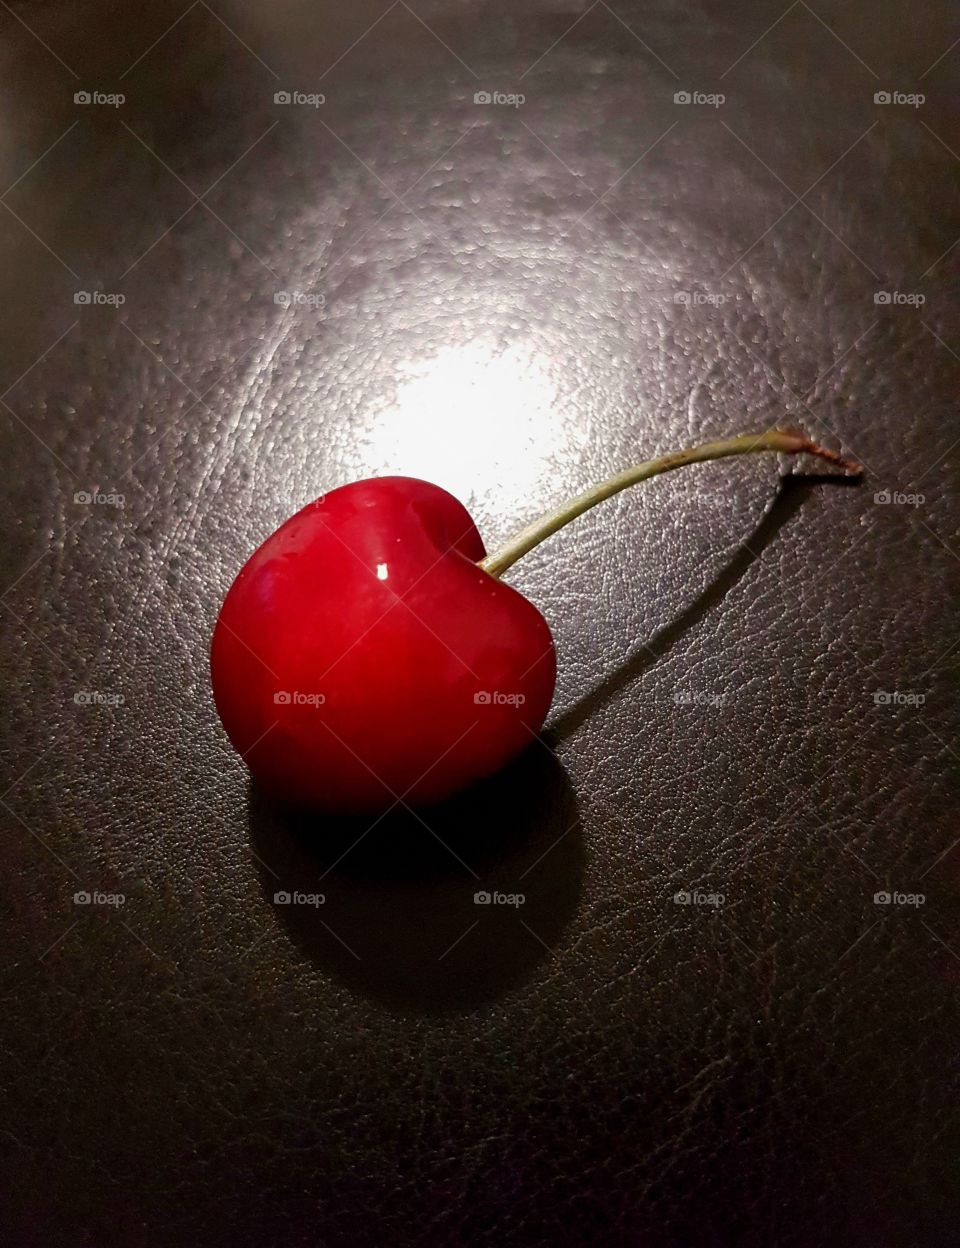 Cherry / summer fruits